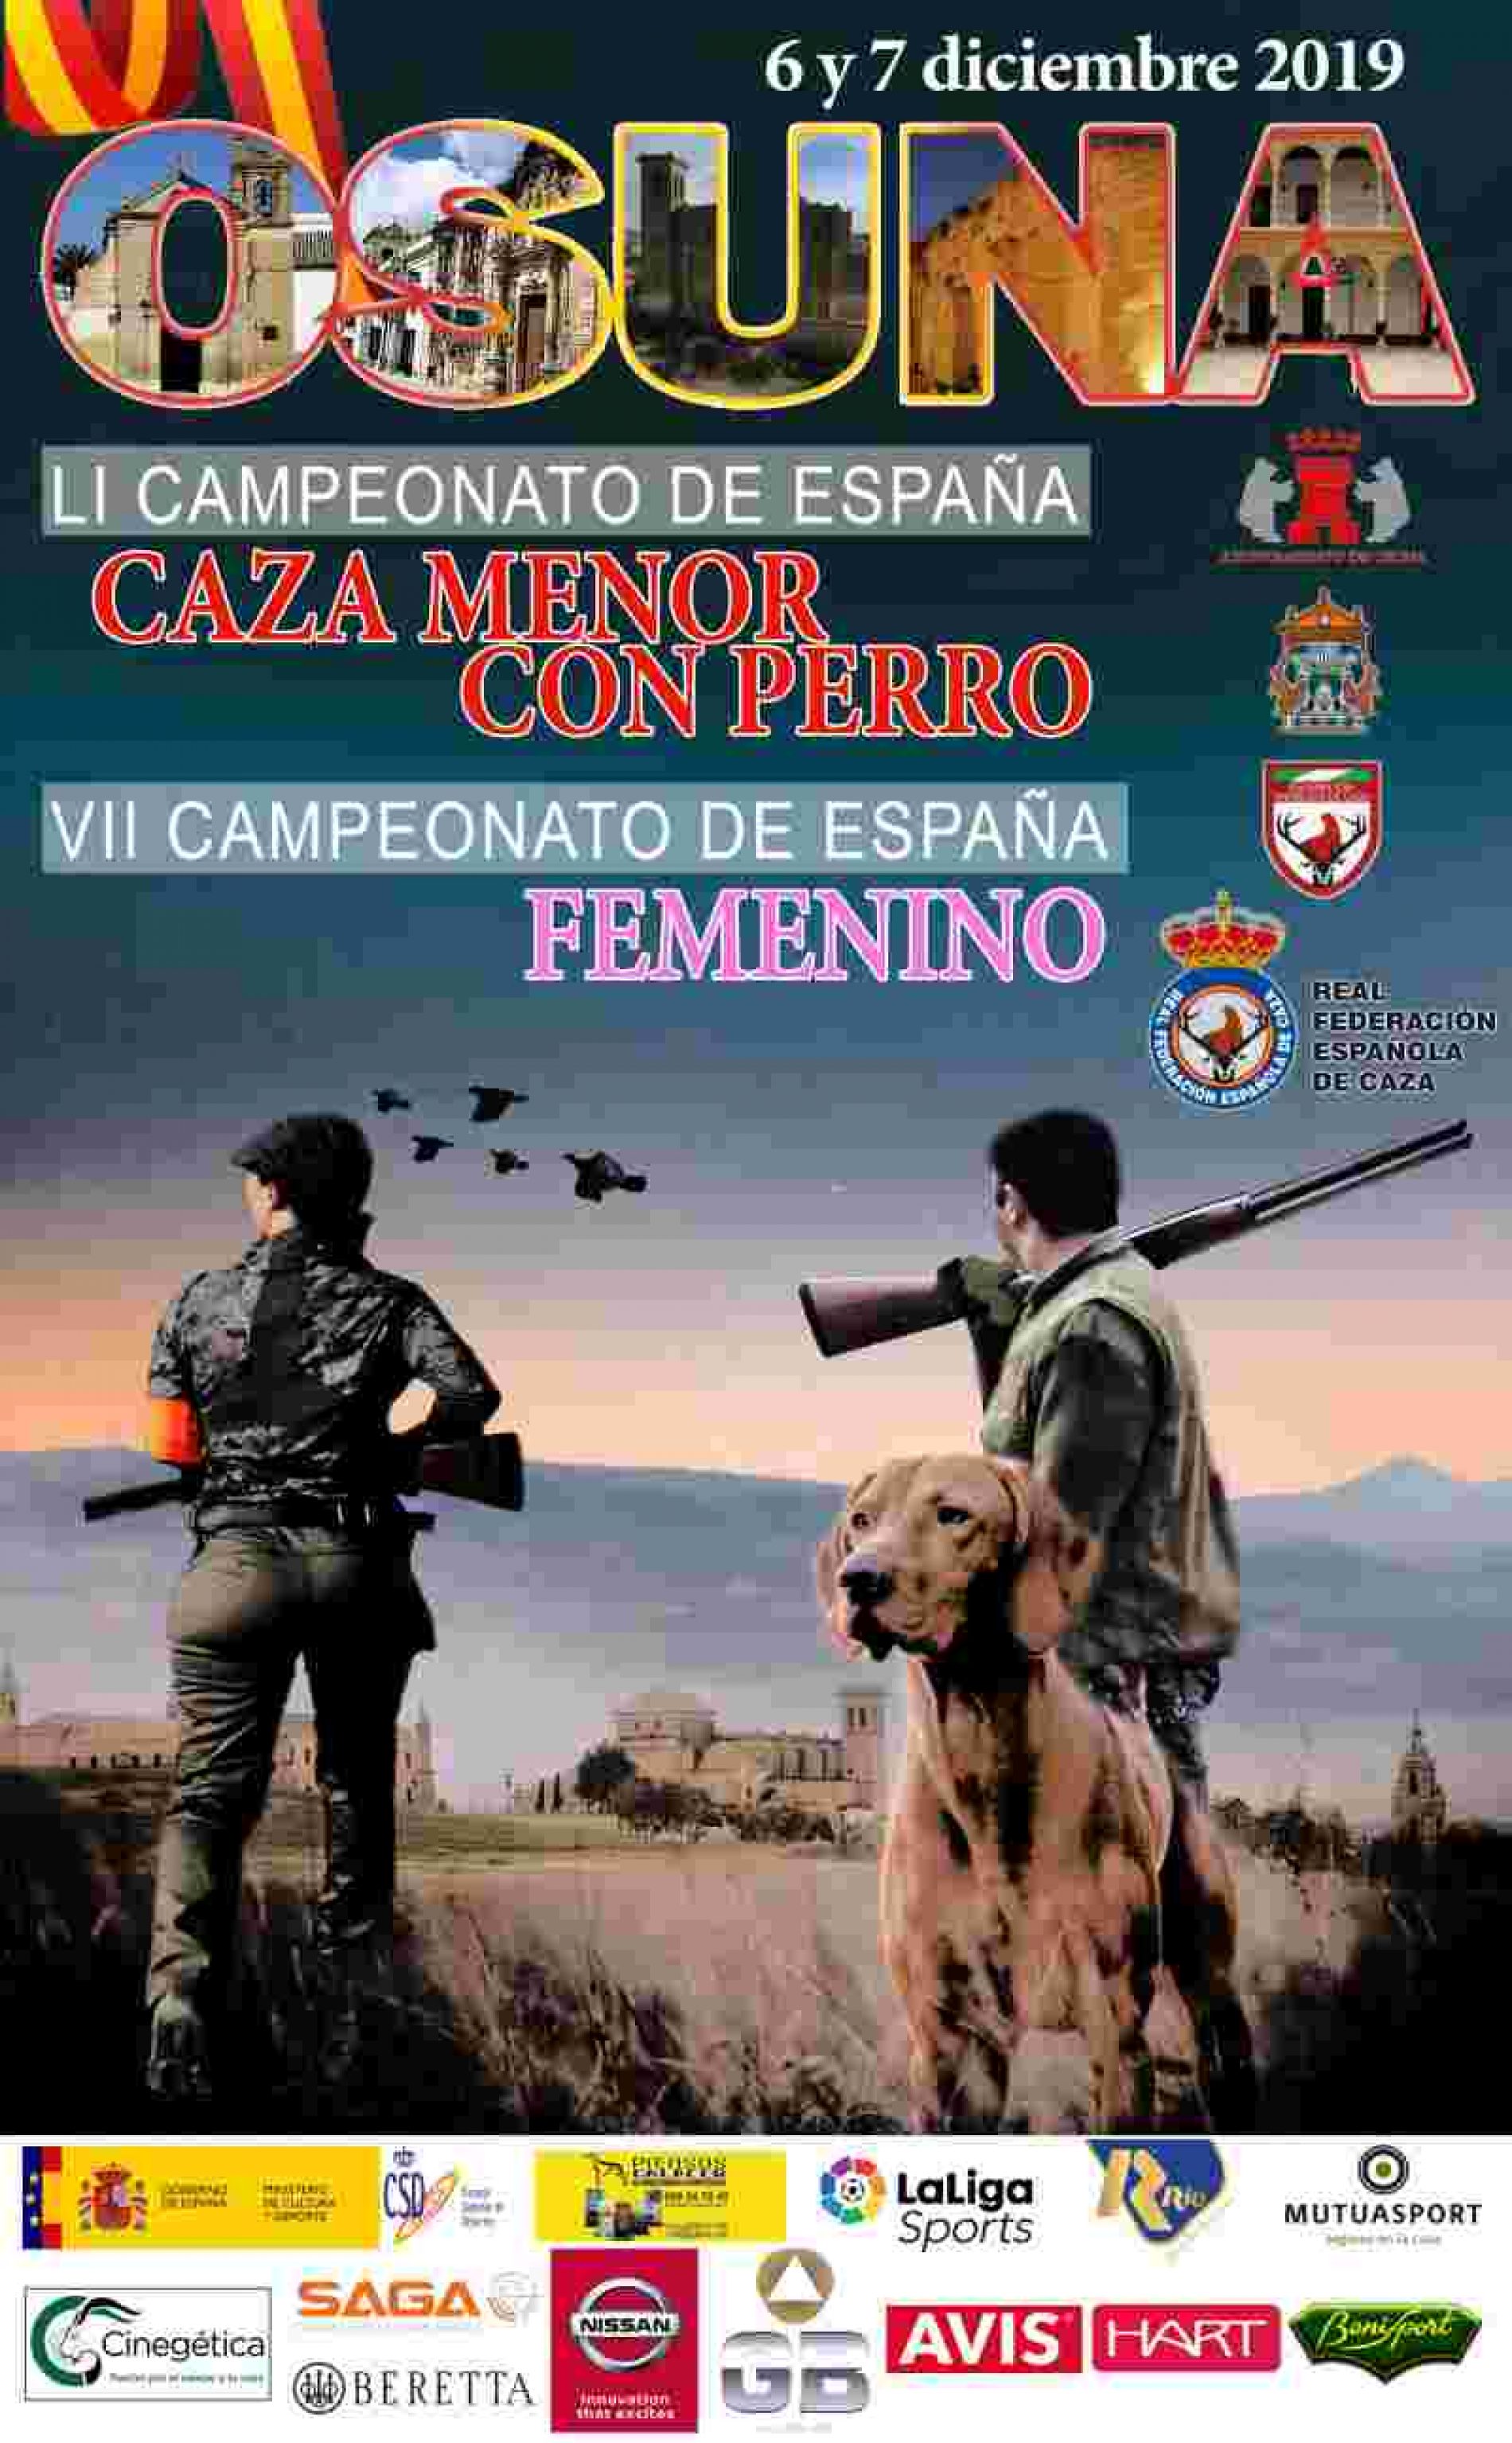 LI Campeonato de España de Caza Menor con Perro y VII Campeonato de España Femenino